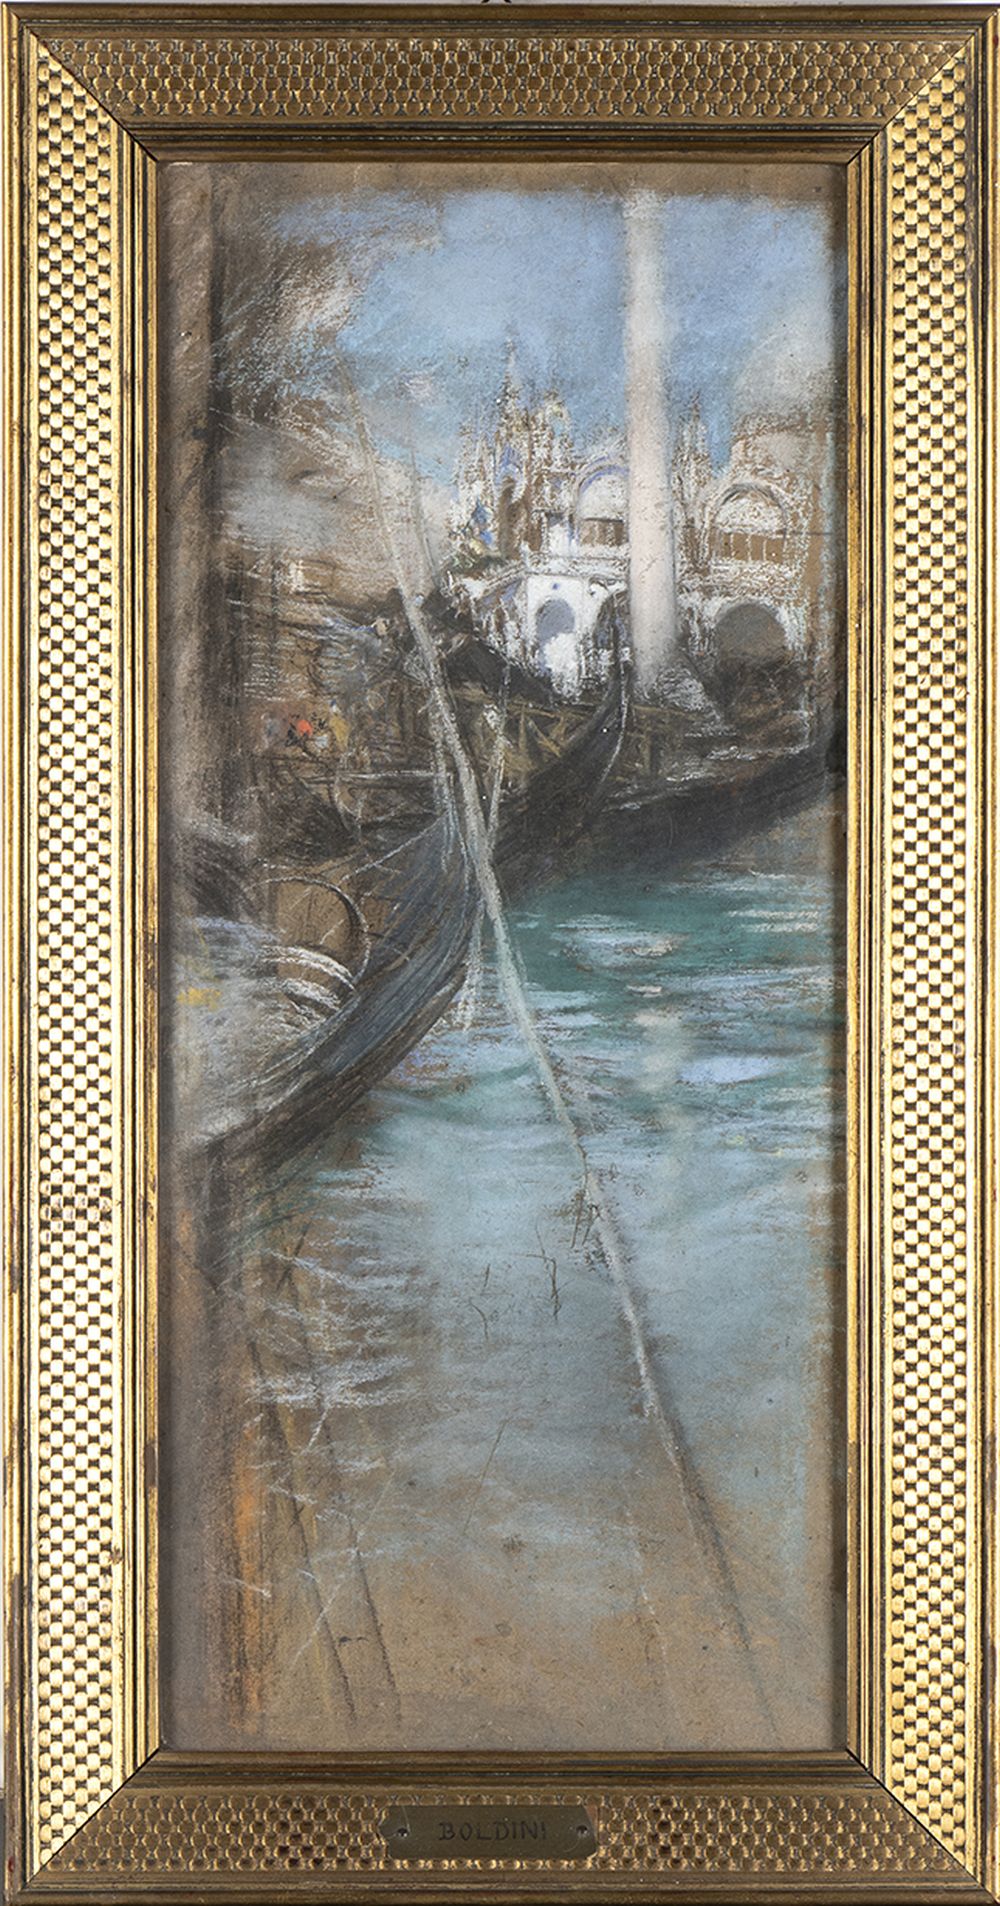 GIOVANNI BOLDINI (Ferrara, 1842 - Paris, 1931): Venice lagoon and St. Mark Cathedral view